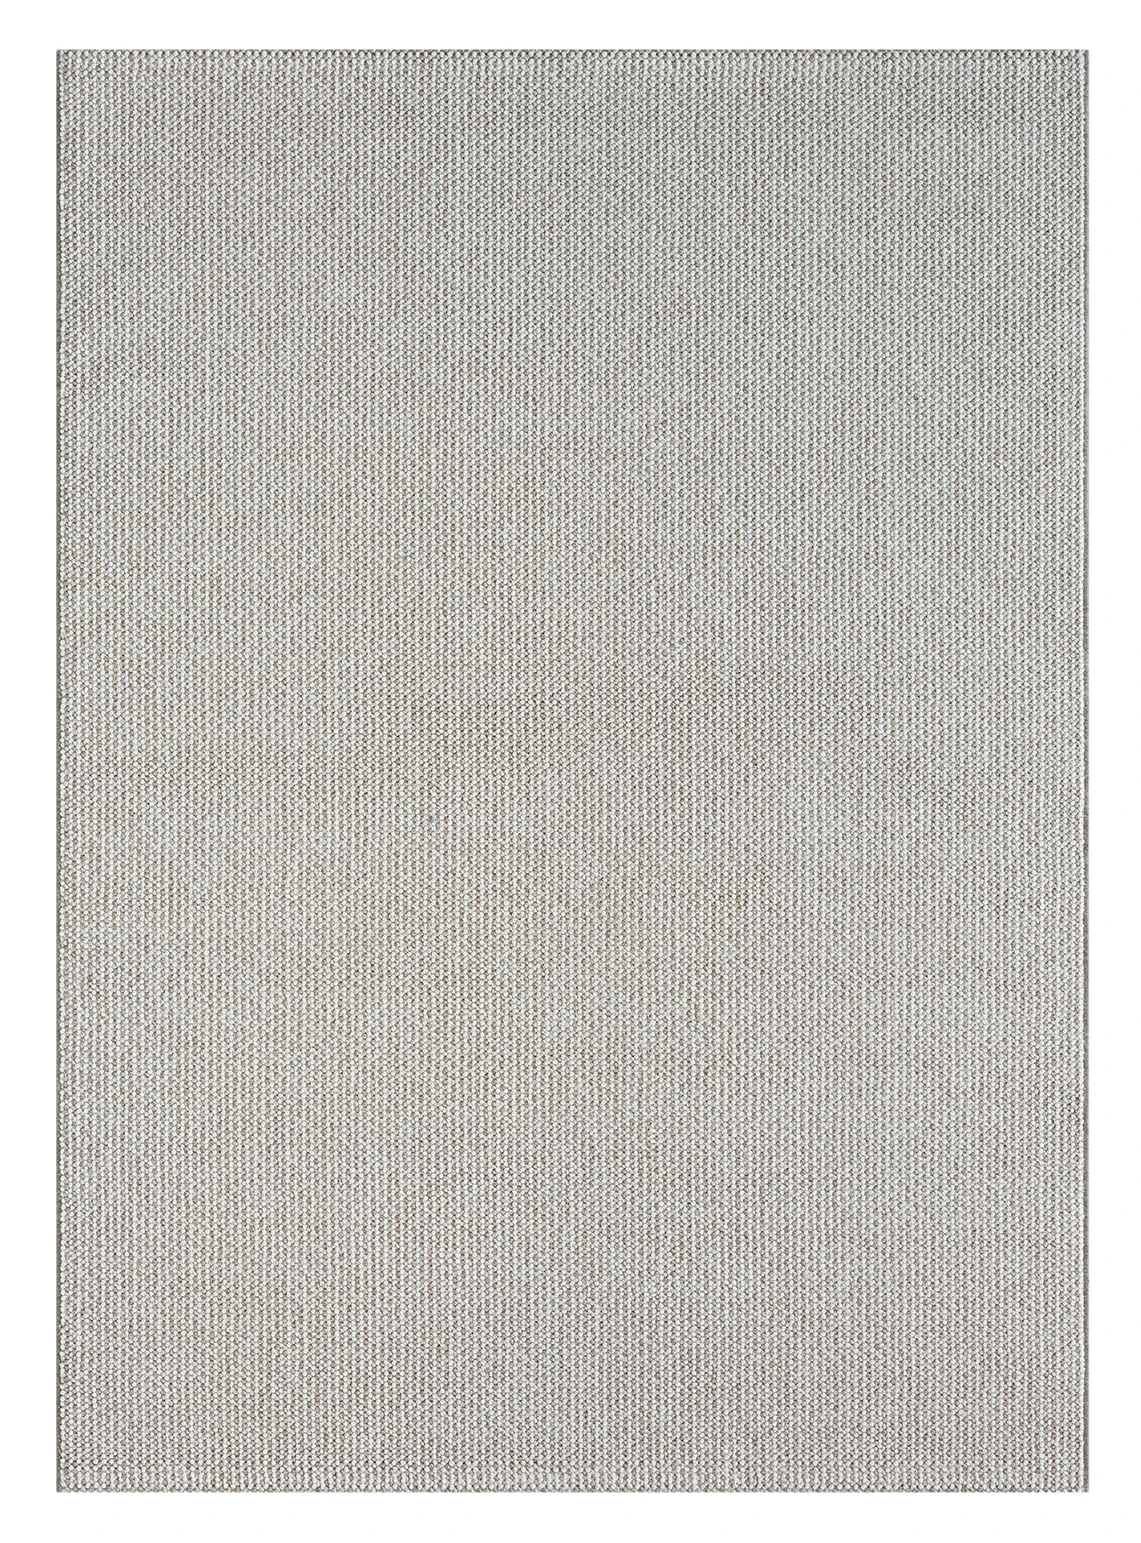 שטיח דגם CALIFORNIA לולאות צבע בז' לבן  : image 3